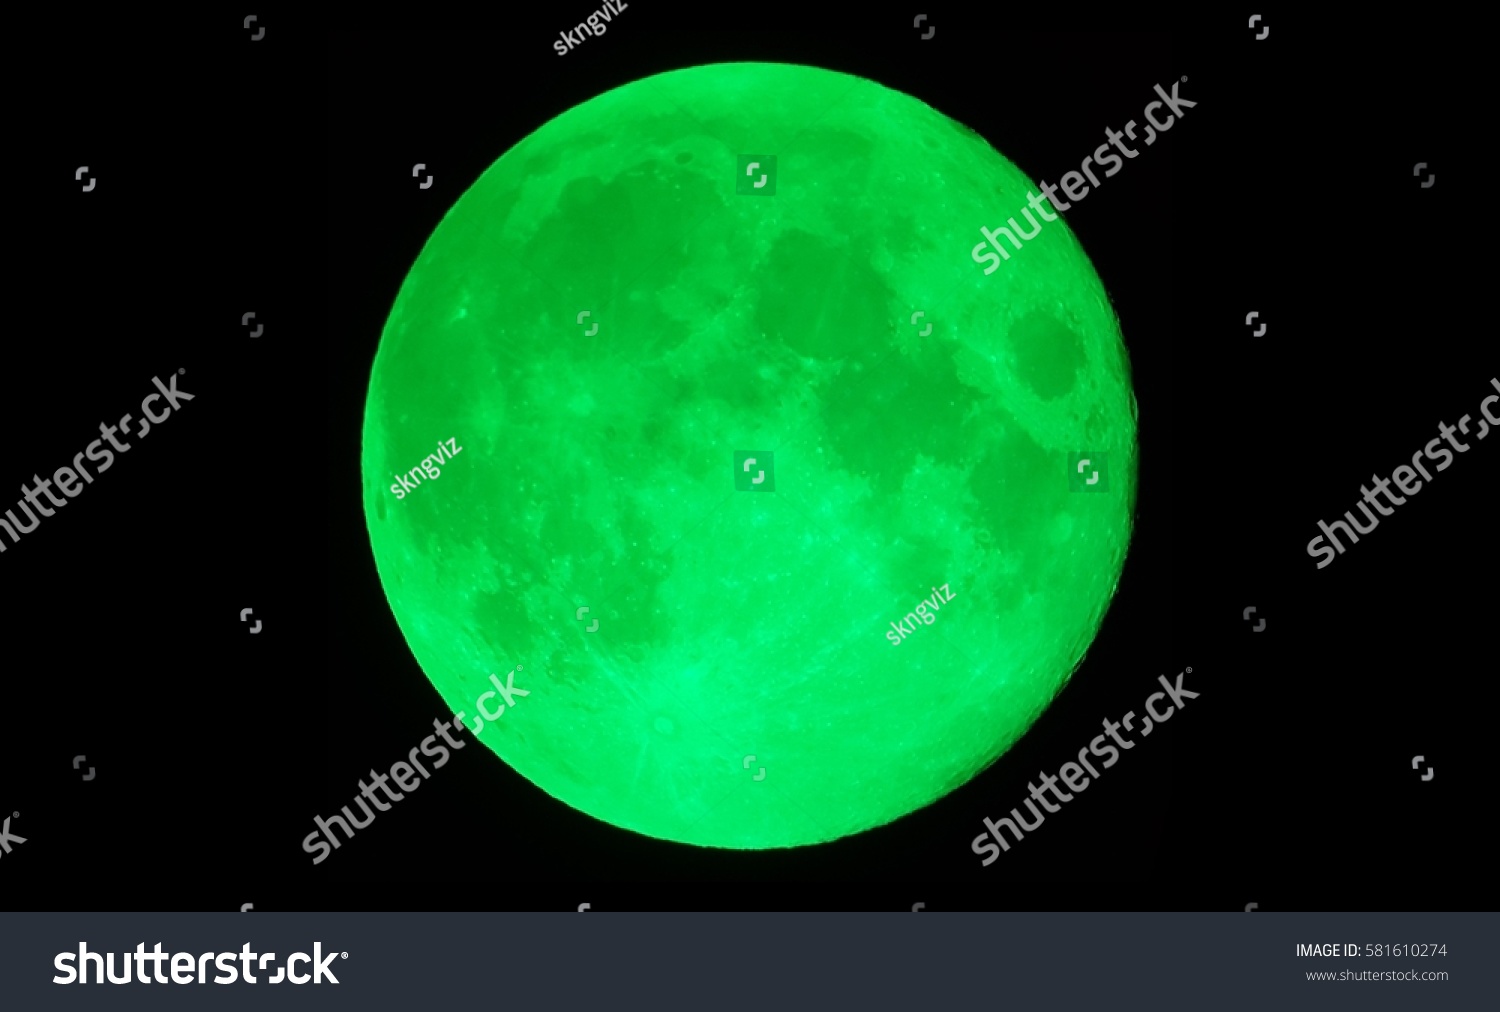 148,259 Green Moon Images, Stock Photos & Vectors Shutterstock